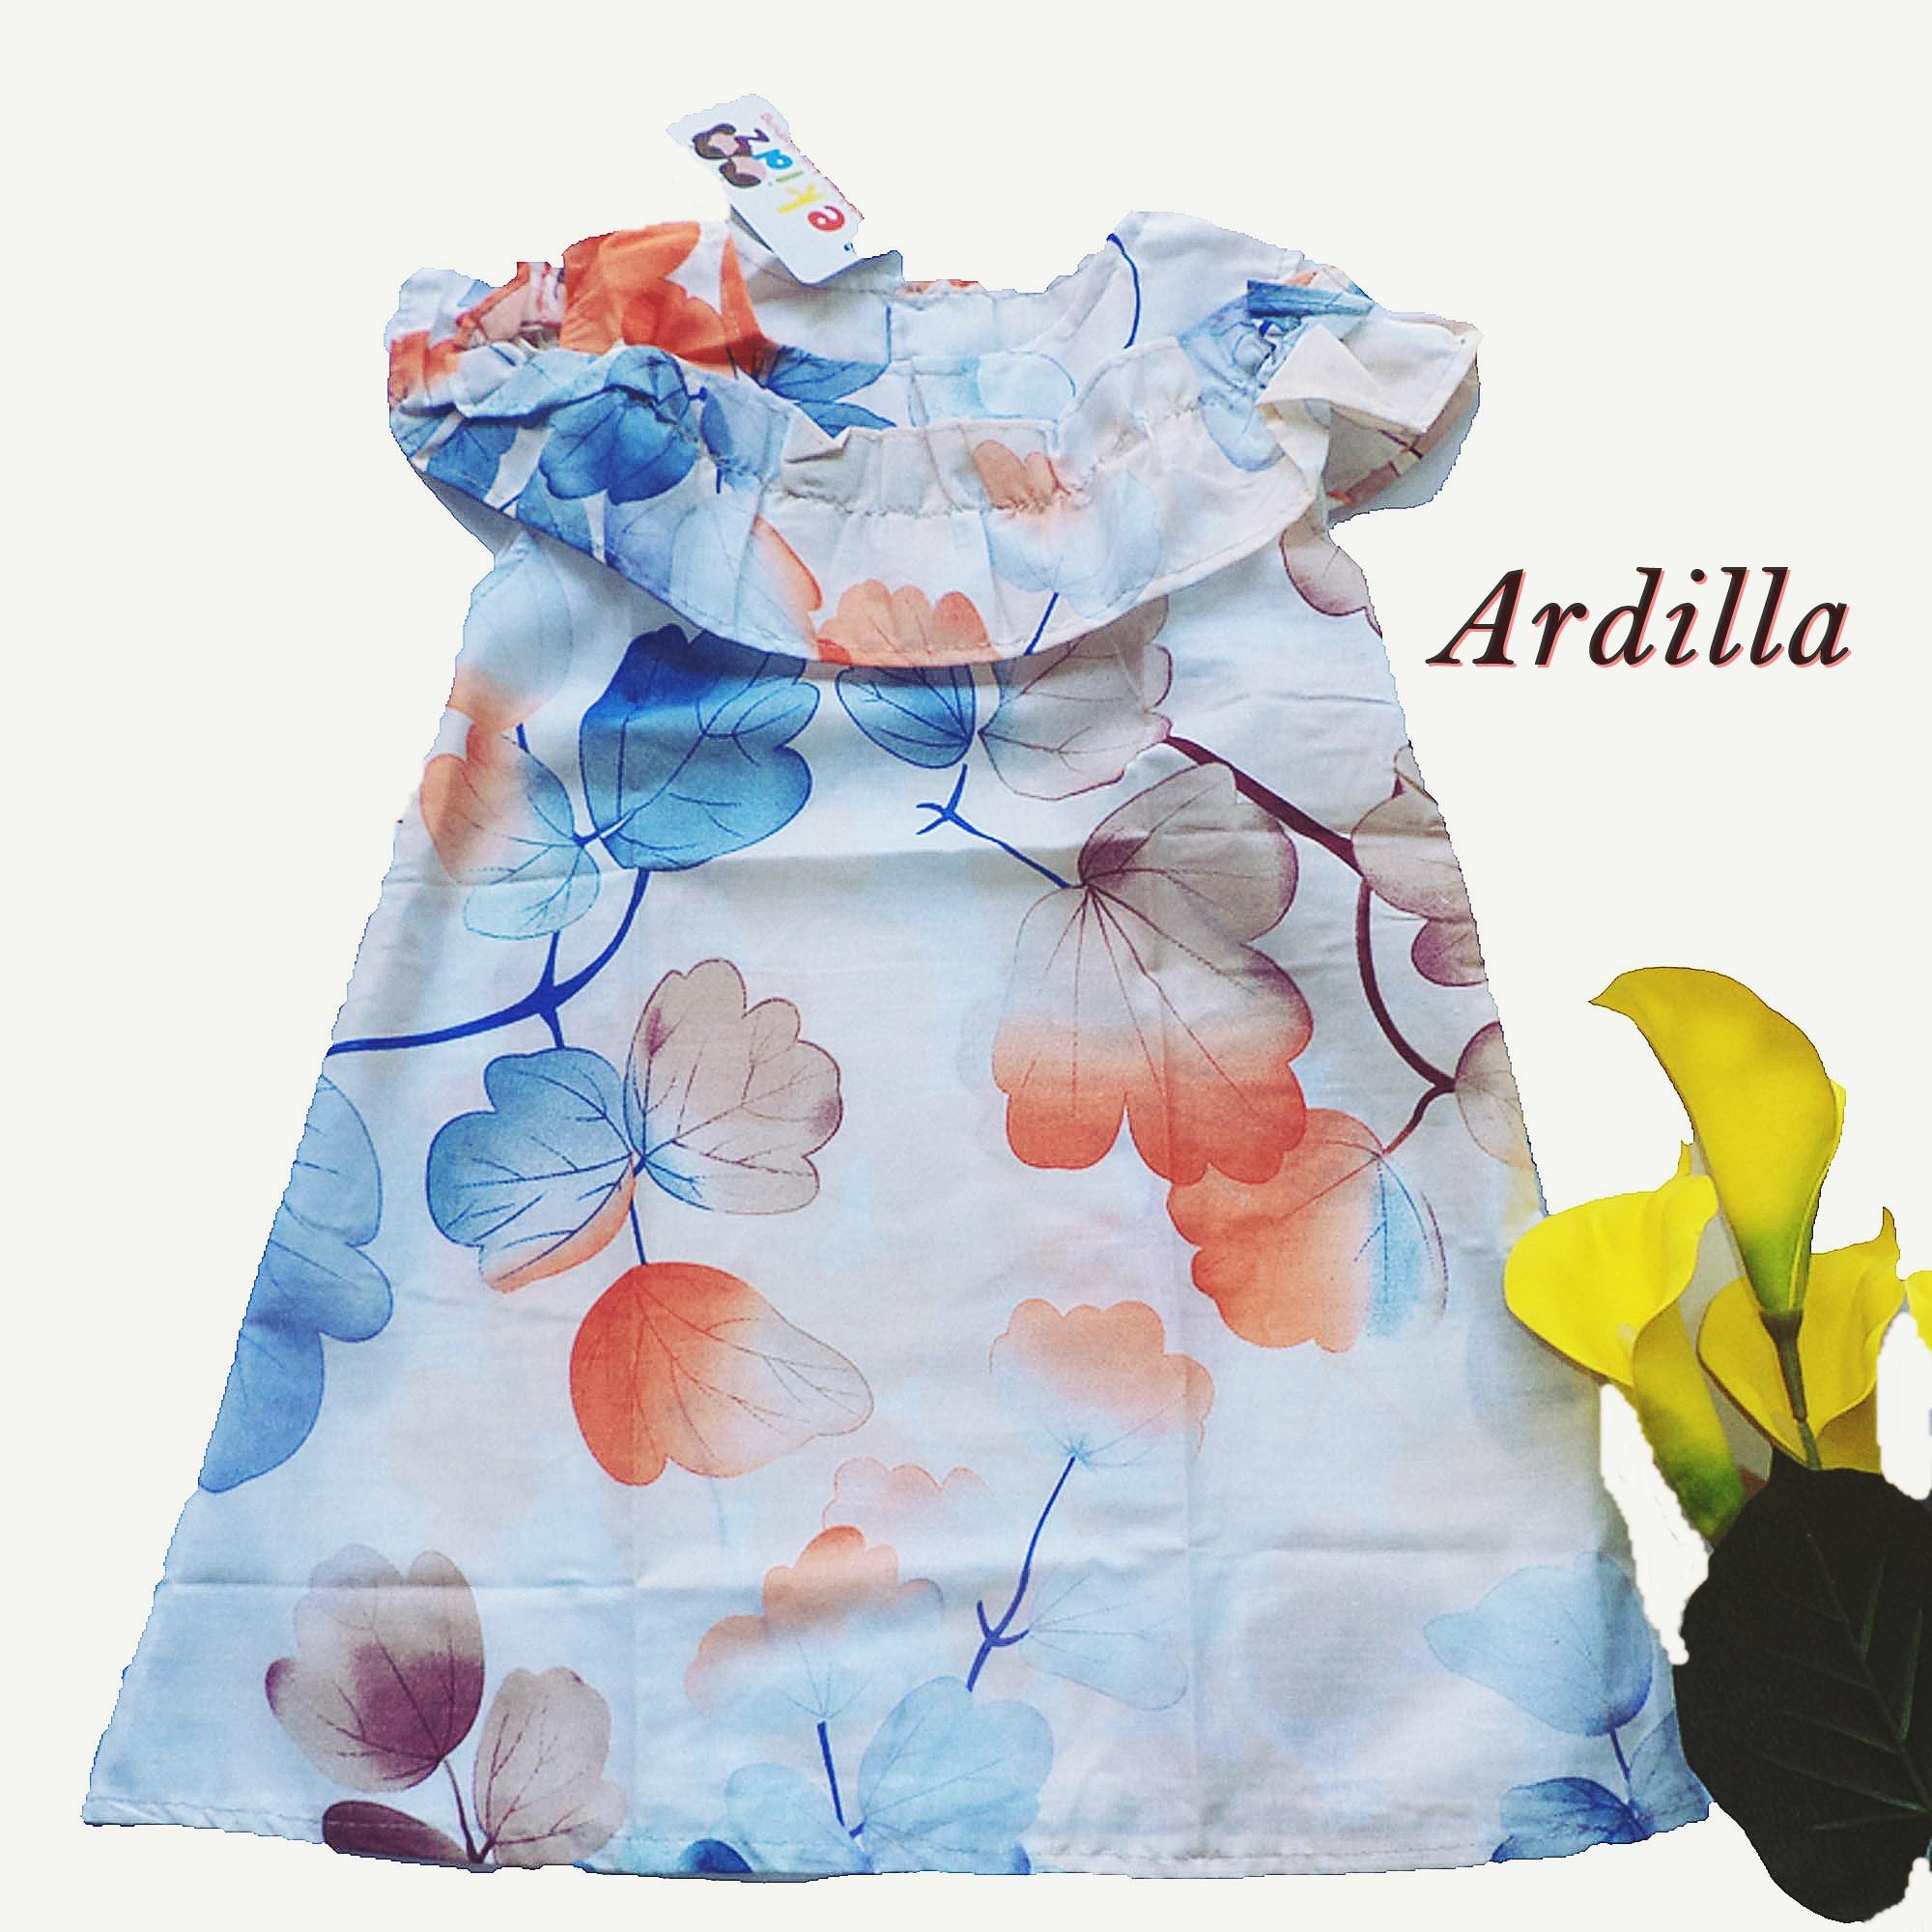 Ardilla Dress Anak Perempuan by Ekidz / Baju Dress Anak / Pakaian Anak Perempuan / Baju Anak Perempuan / Baju Dres Anak Perempuan - Putih Oranye